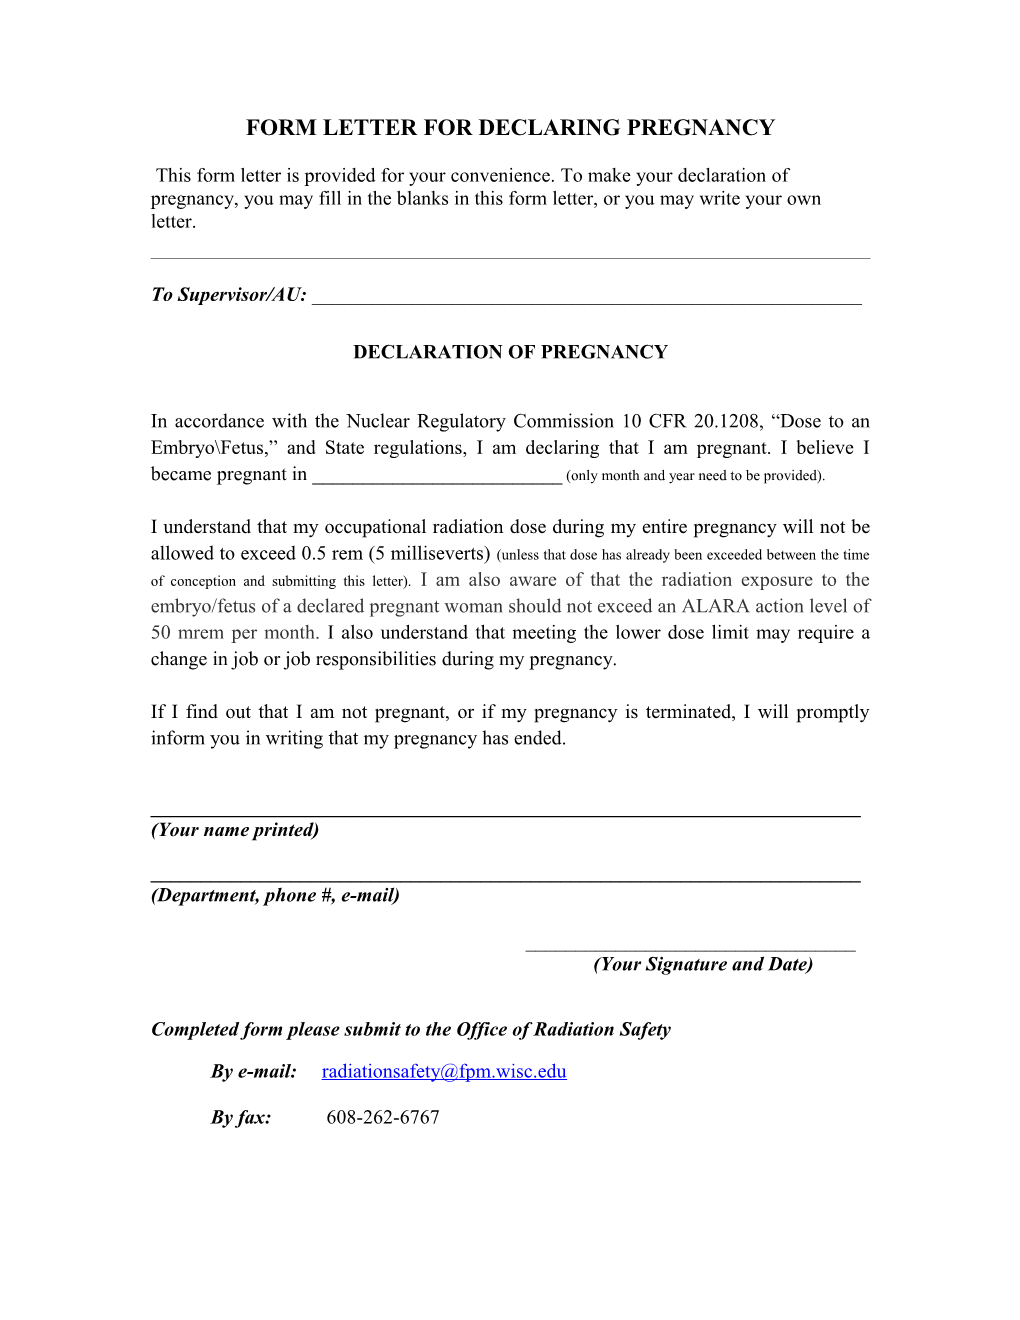 Form Letter for Declaring Pregnancy